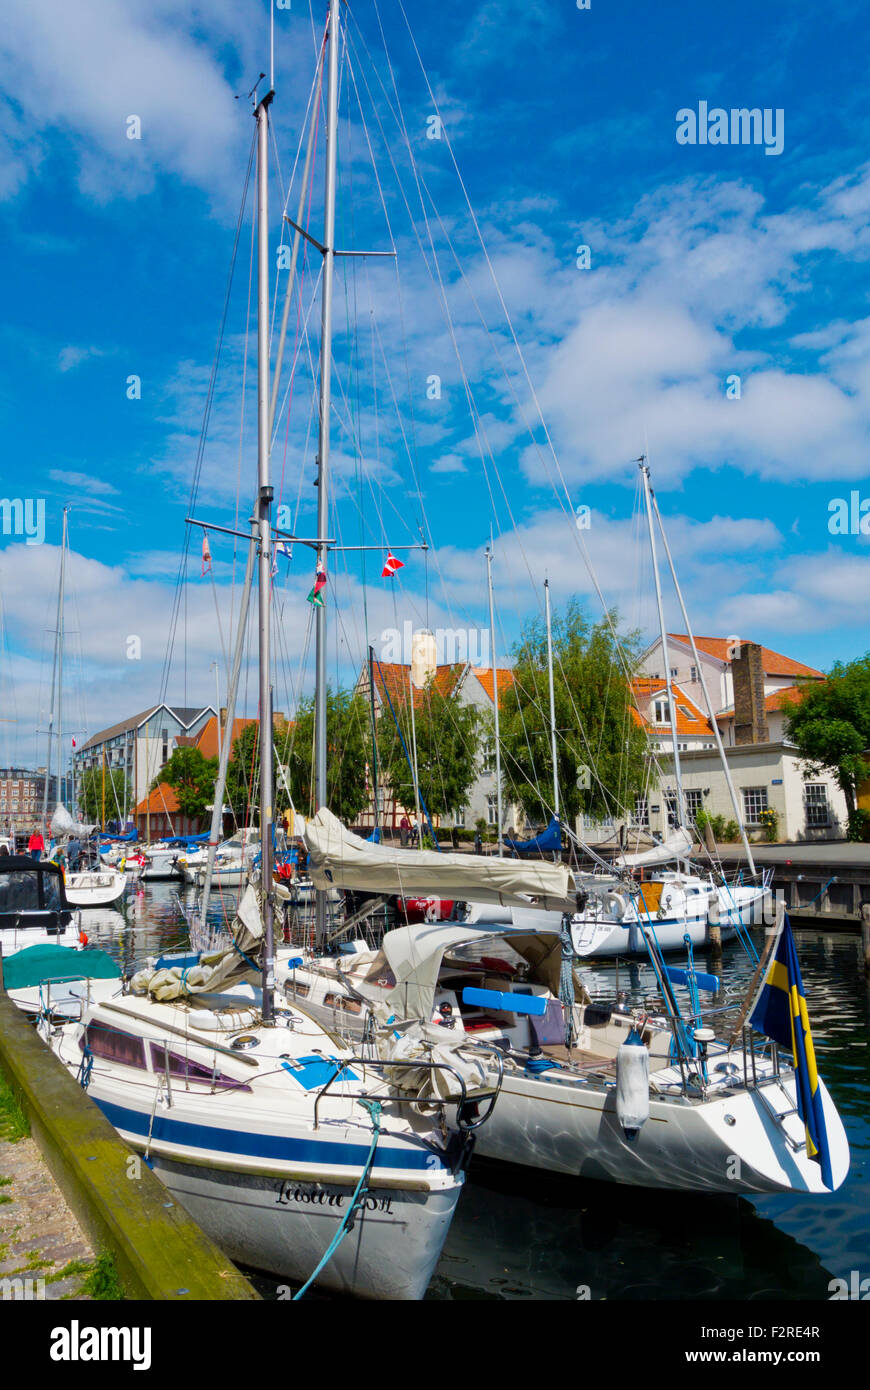 Sailing boats, Christianshavns Kanal, canal, Christianshavn, Copenhagen, Denmark Stock Photo